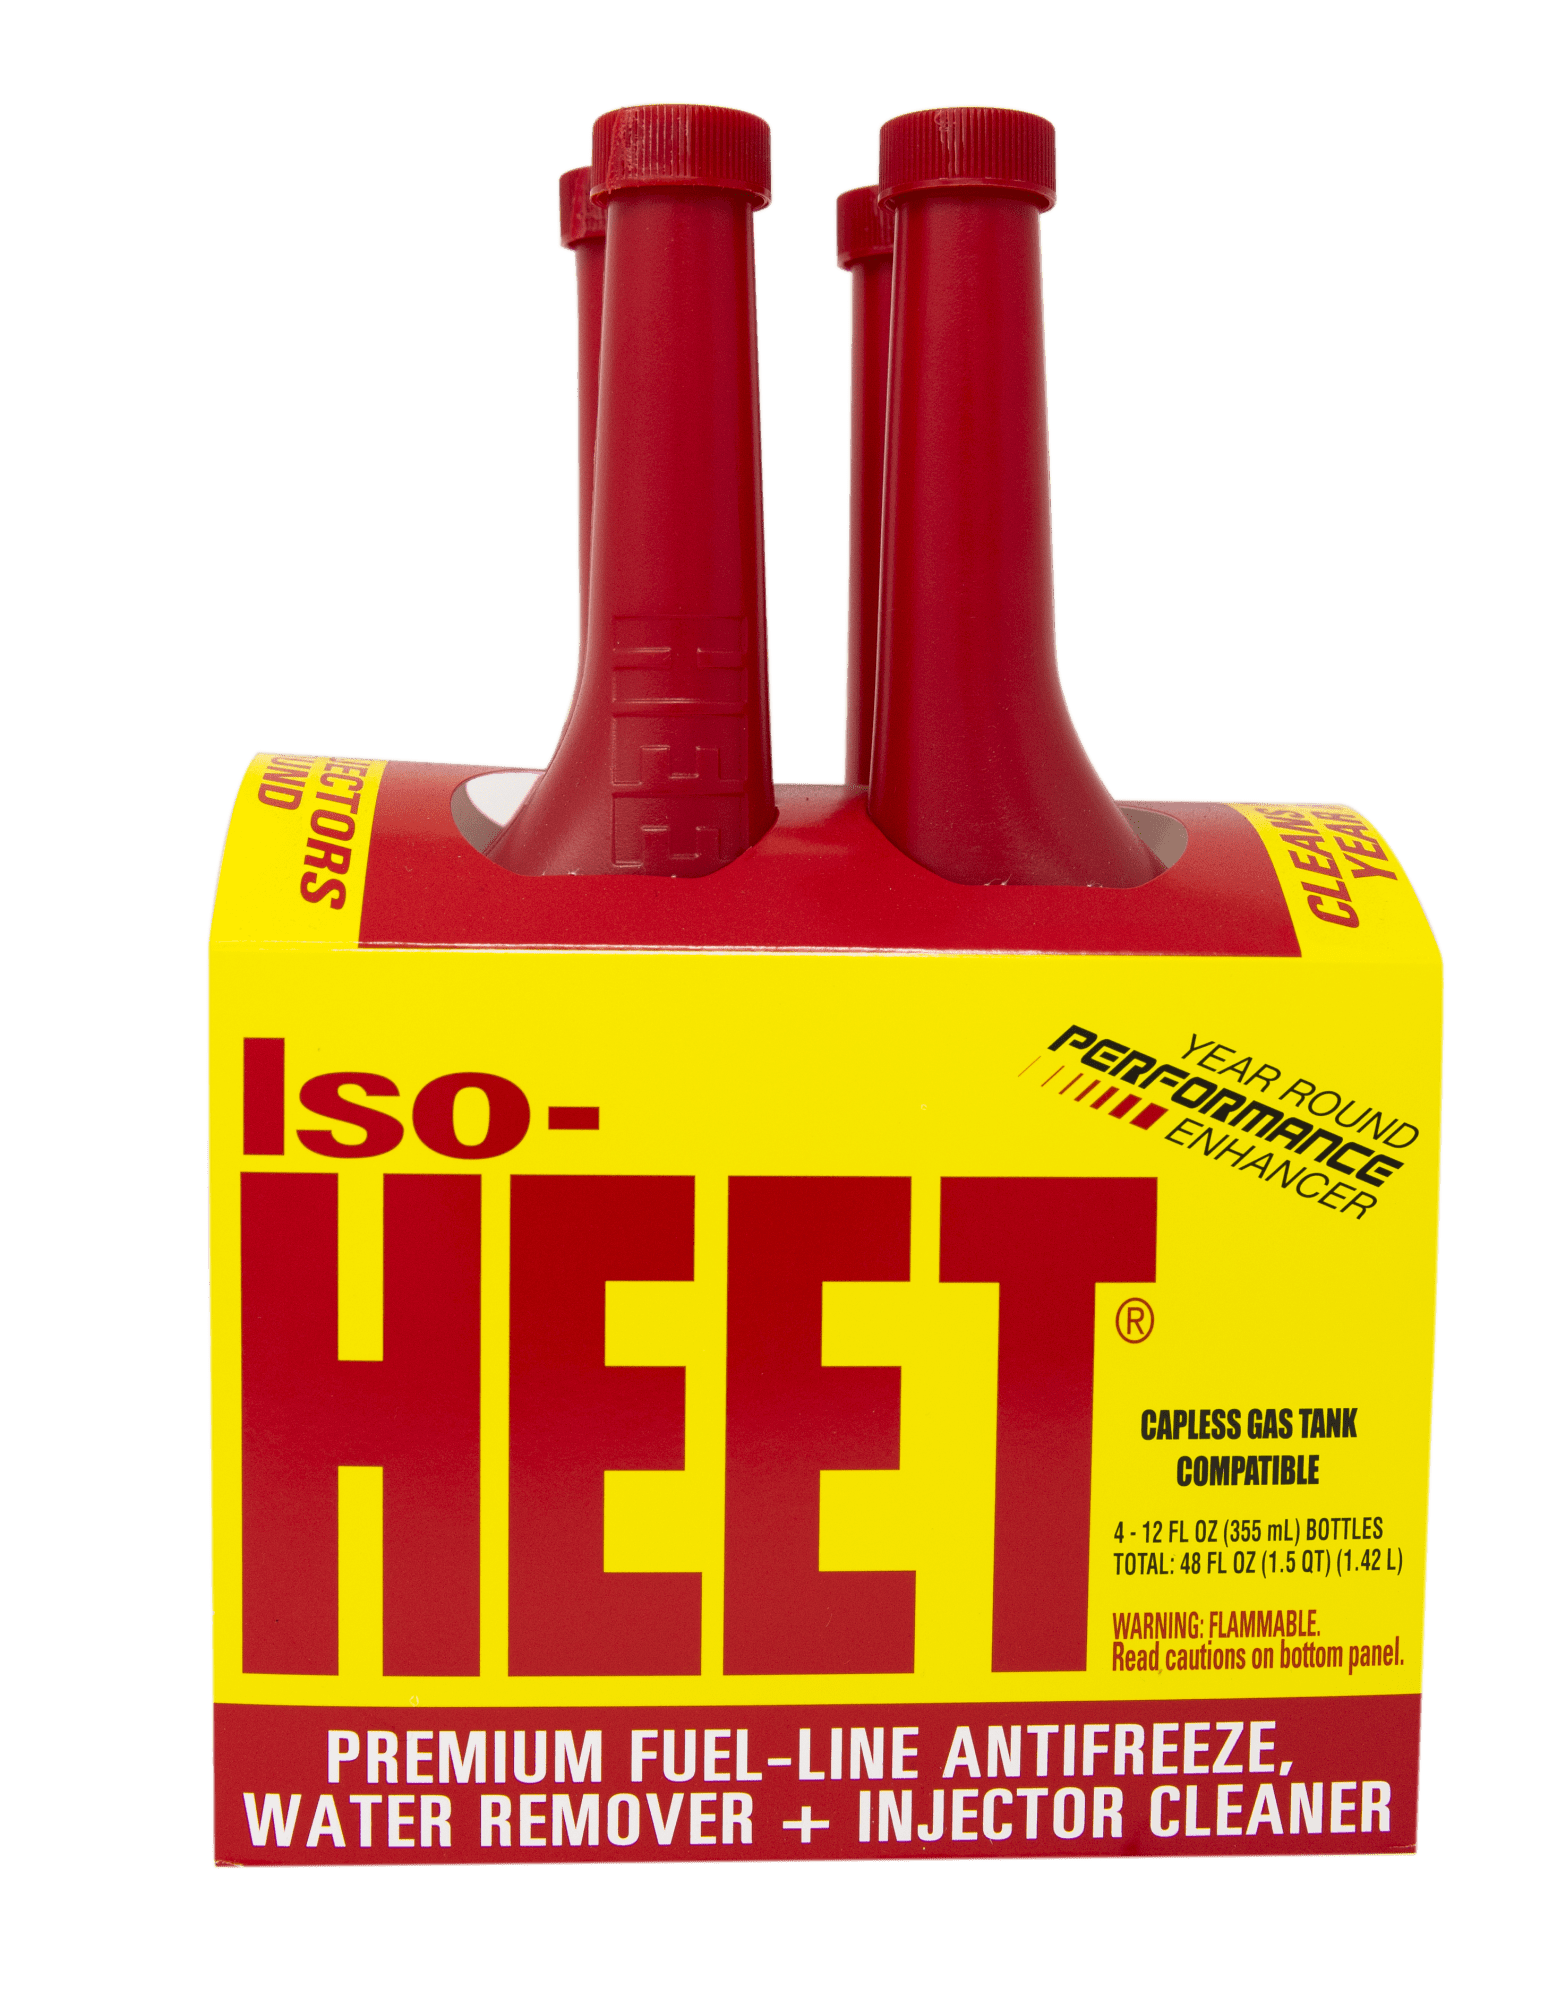 Iso-HEET Water Remover & Premium Fuel Line Antifreeze + Injector Cleaner (Pack of 4) (28206)